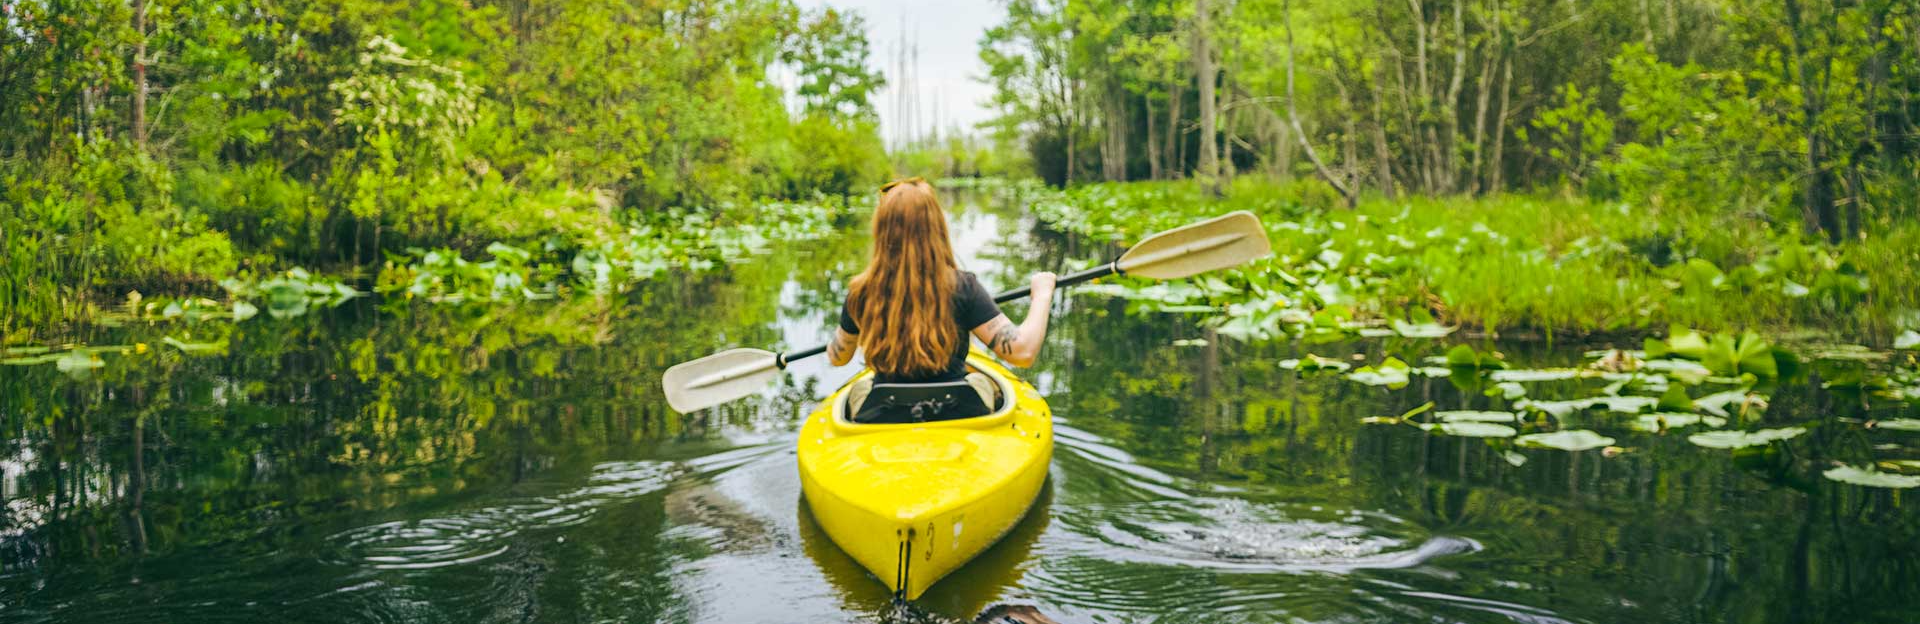 kayaker going through swamp